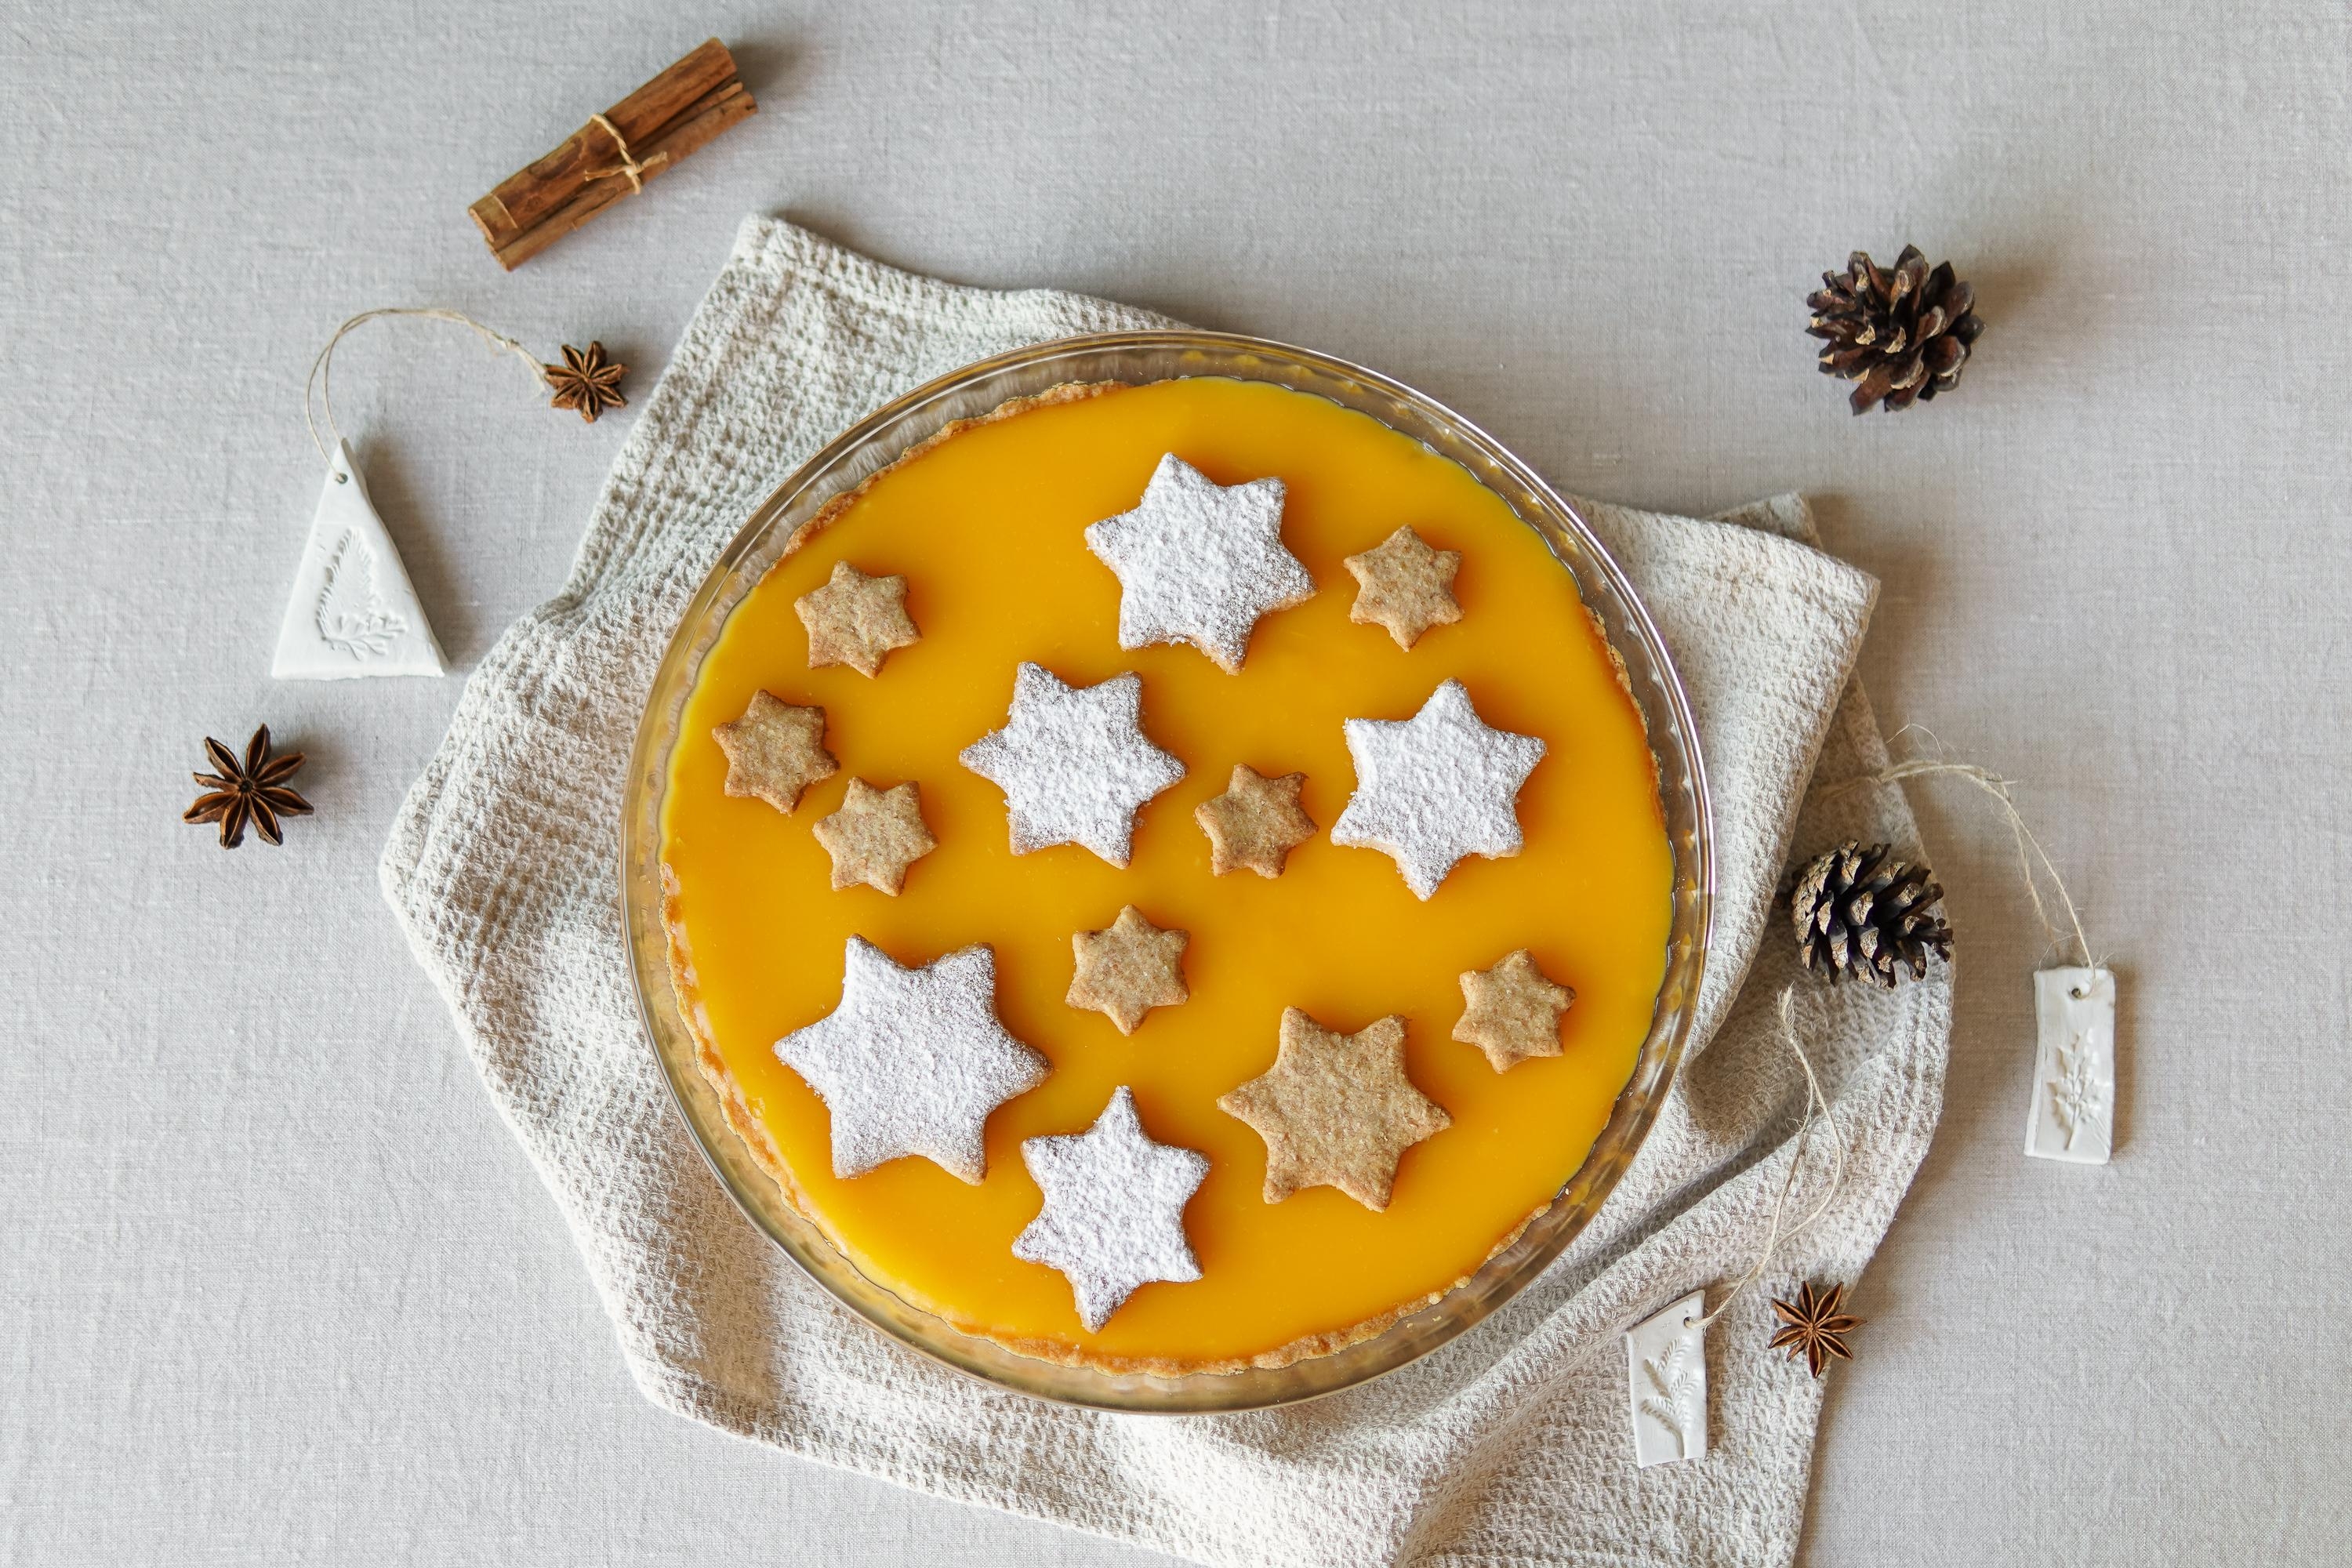 Zitronentarte an Weihnachten?! Aber klar doch! Mit Sternen aus Mürbteig. #kuchen #backen #couchlieblingsrezept